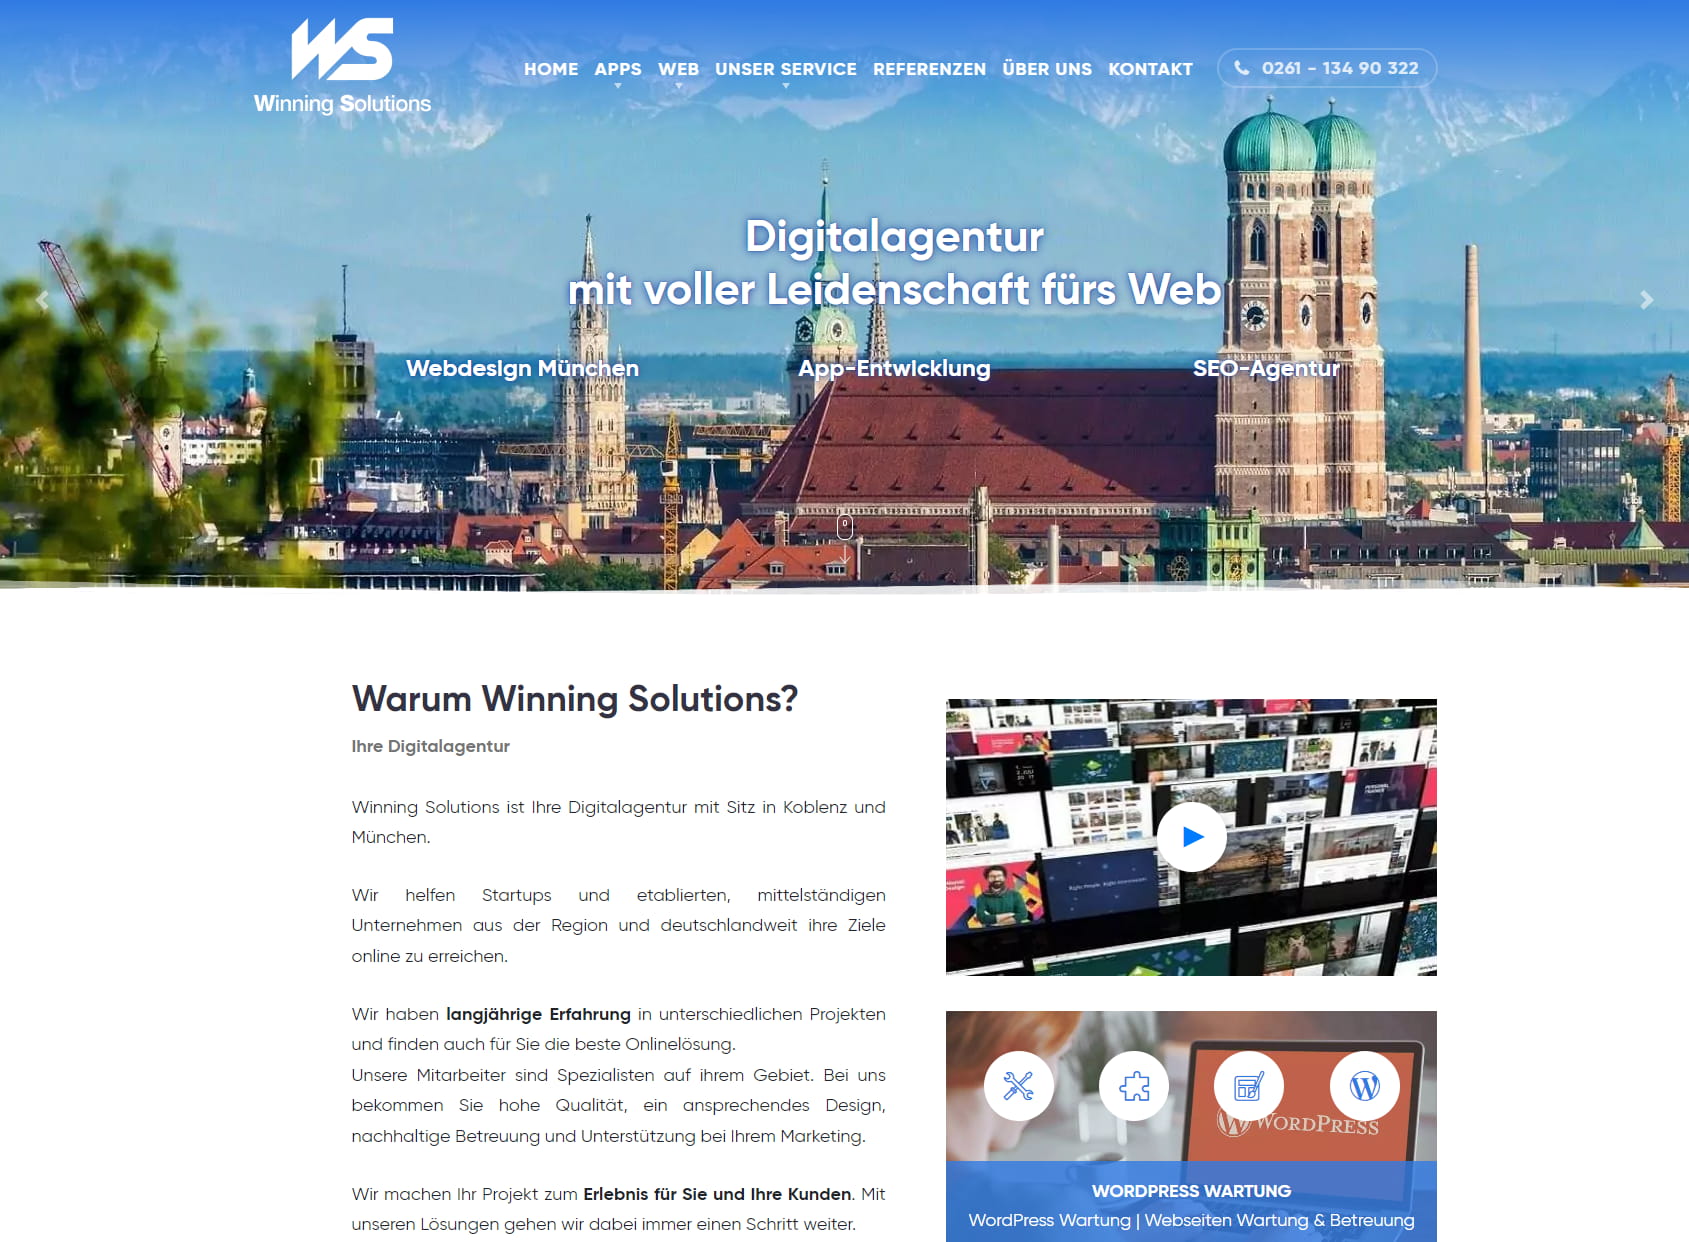 Winning Solutions - Webdesign & App-Entwicklung Koblenz